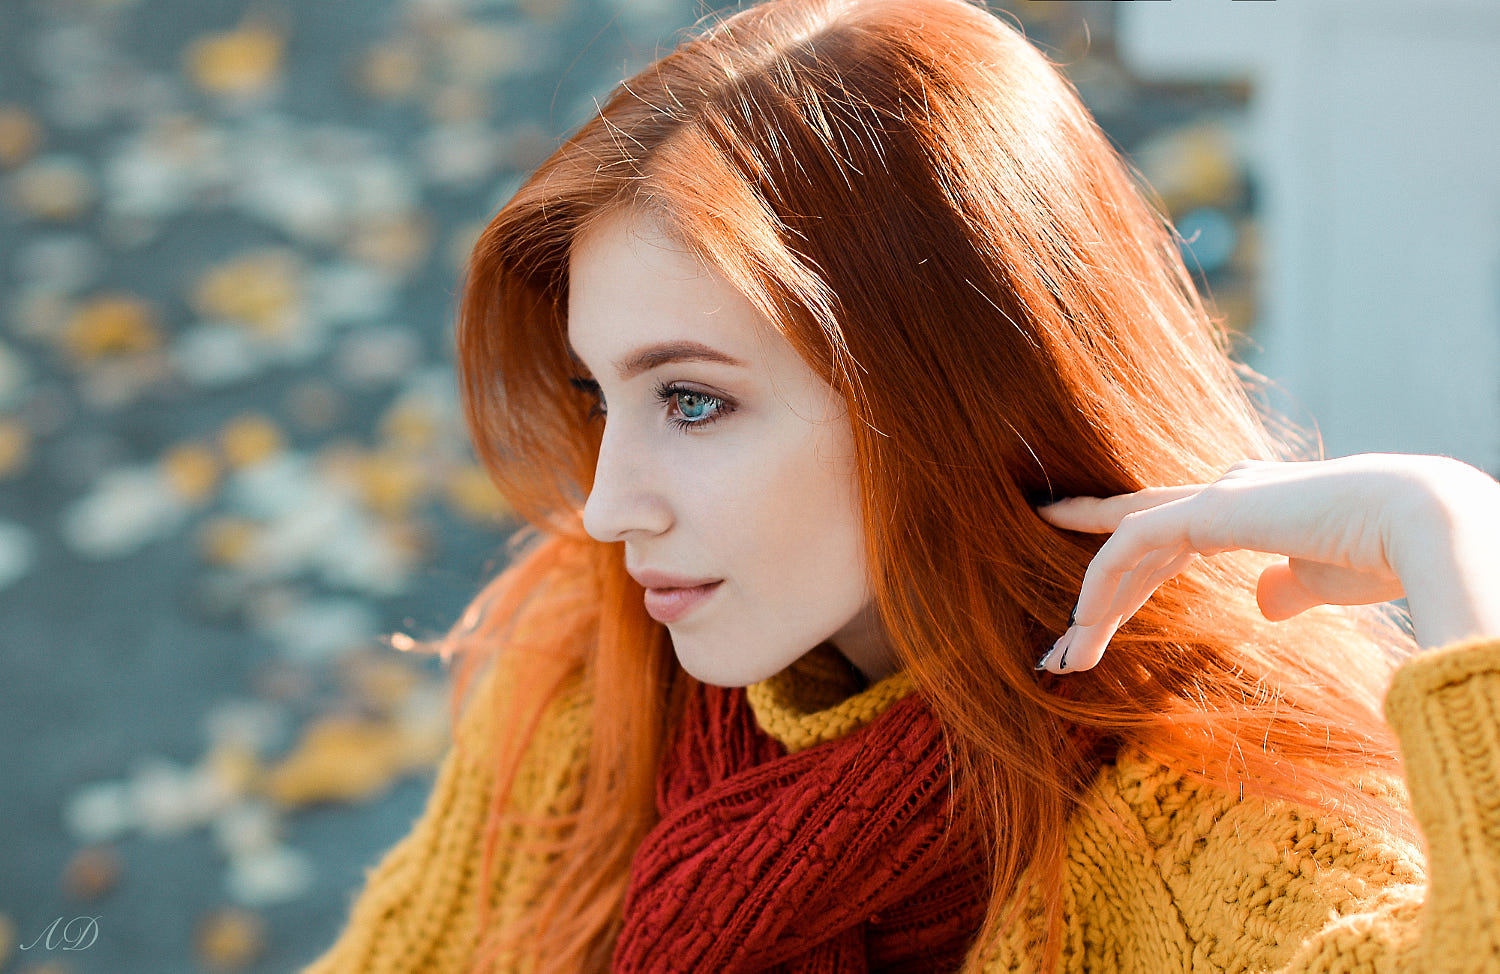 Dmitry Levykin Women Redhead Blue Eyes Long Hair Sweater Scarf Side View Profile Sunlight Portrait 1500x974